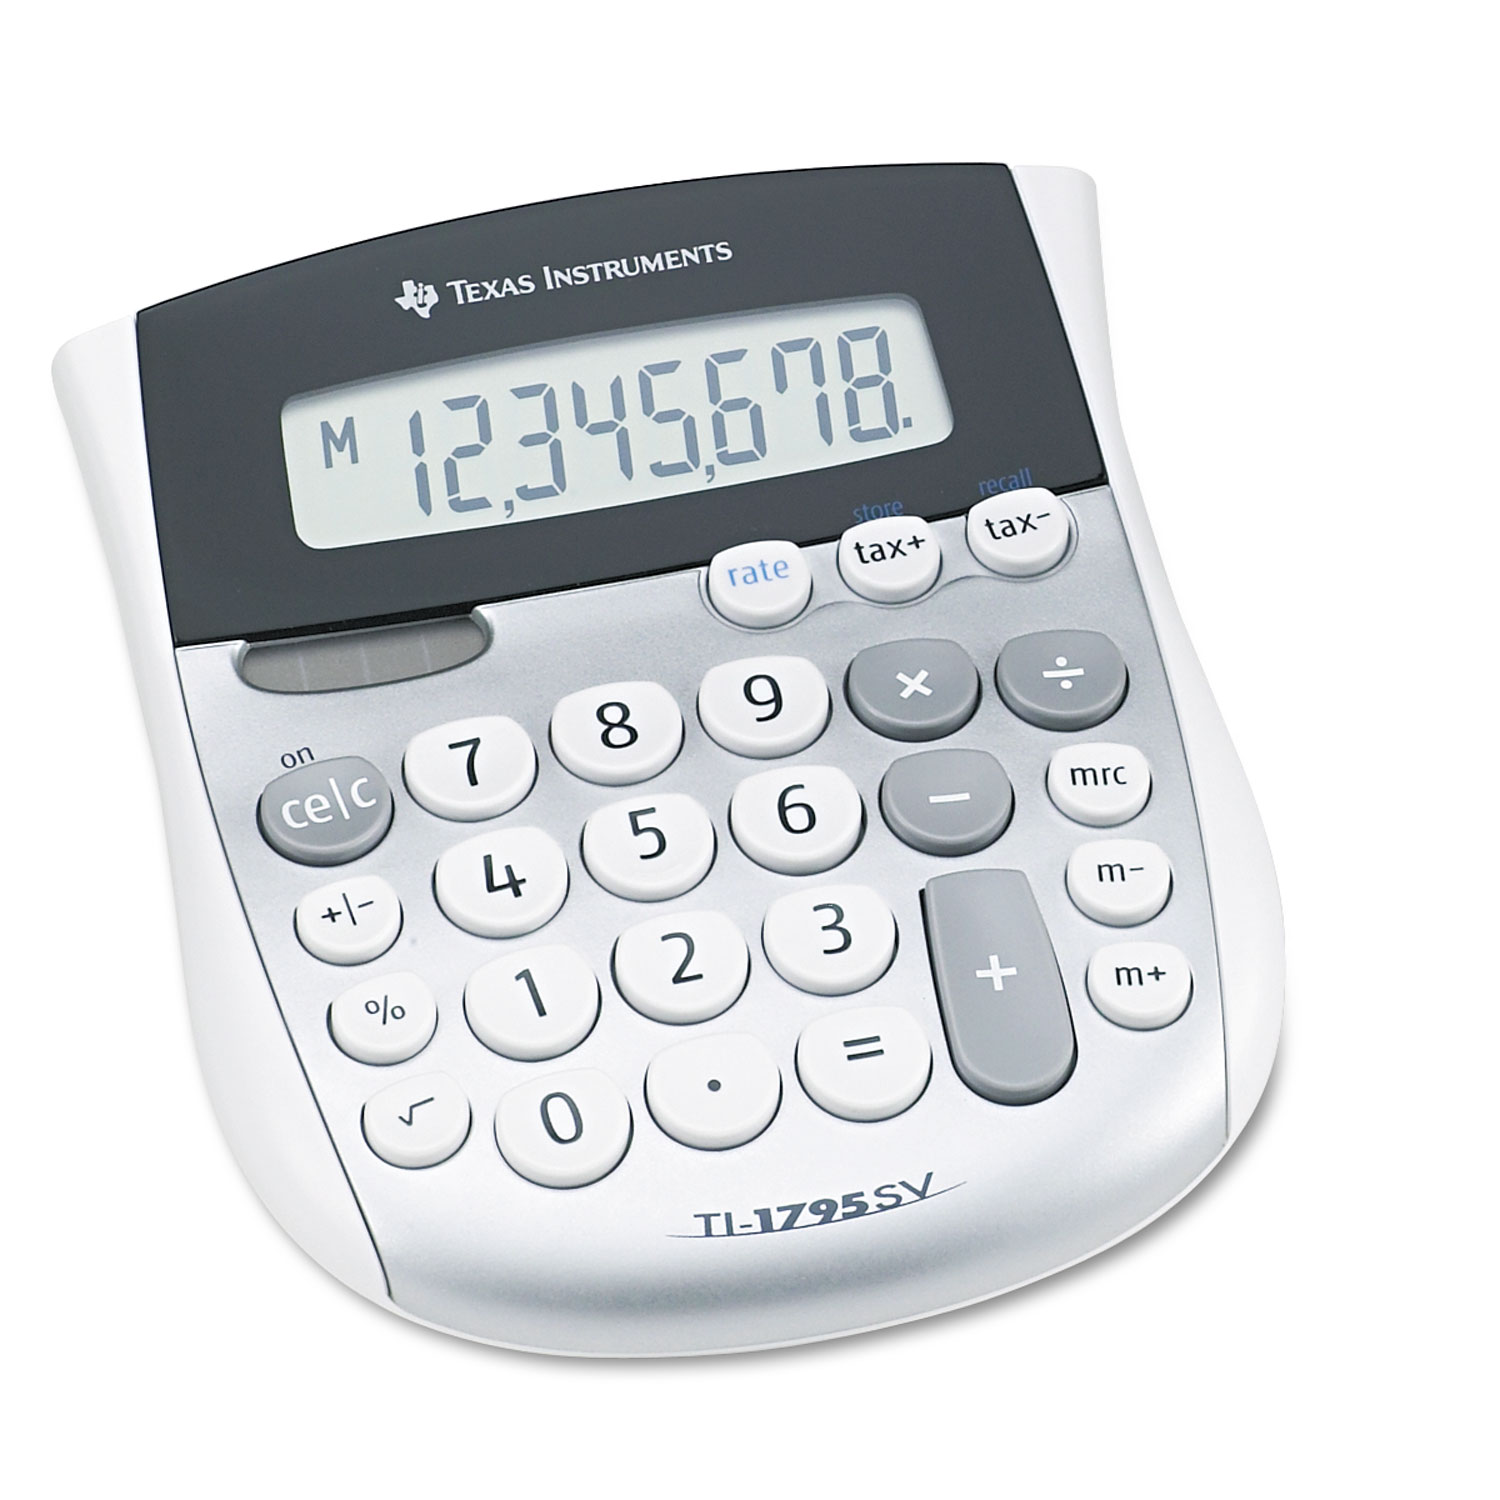 Texas Instruments-TI-1795BP